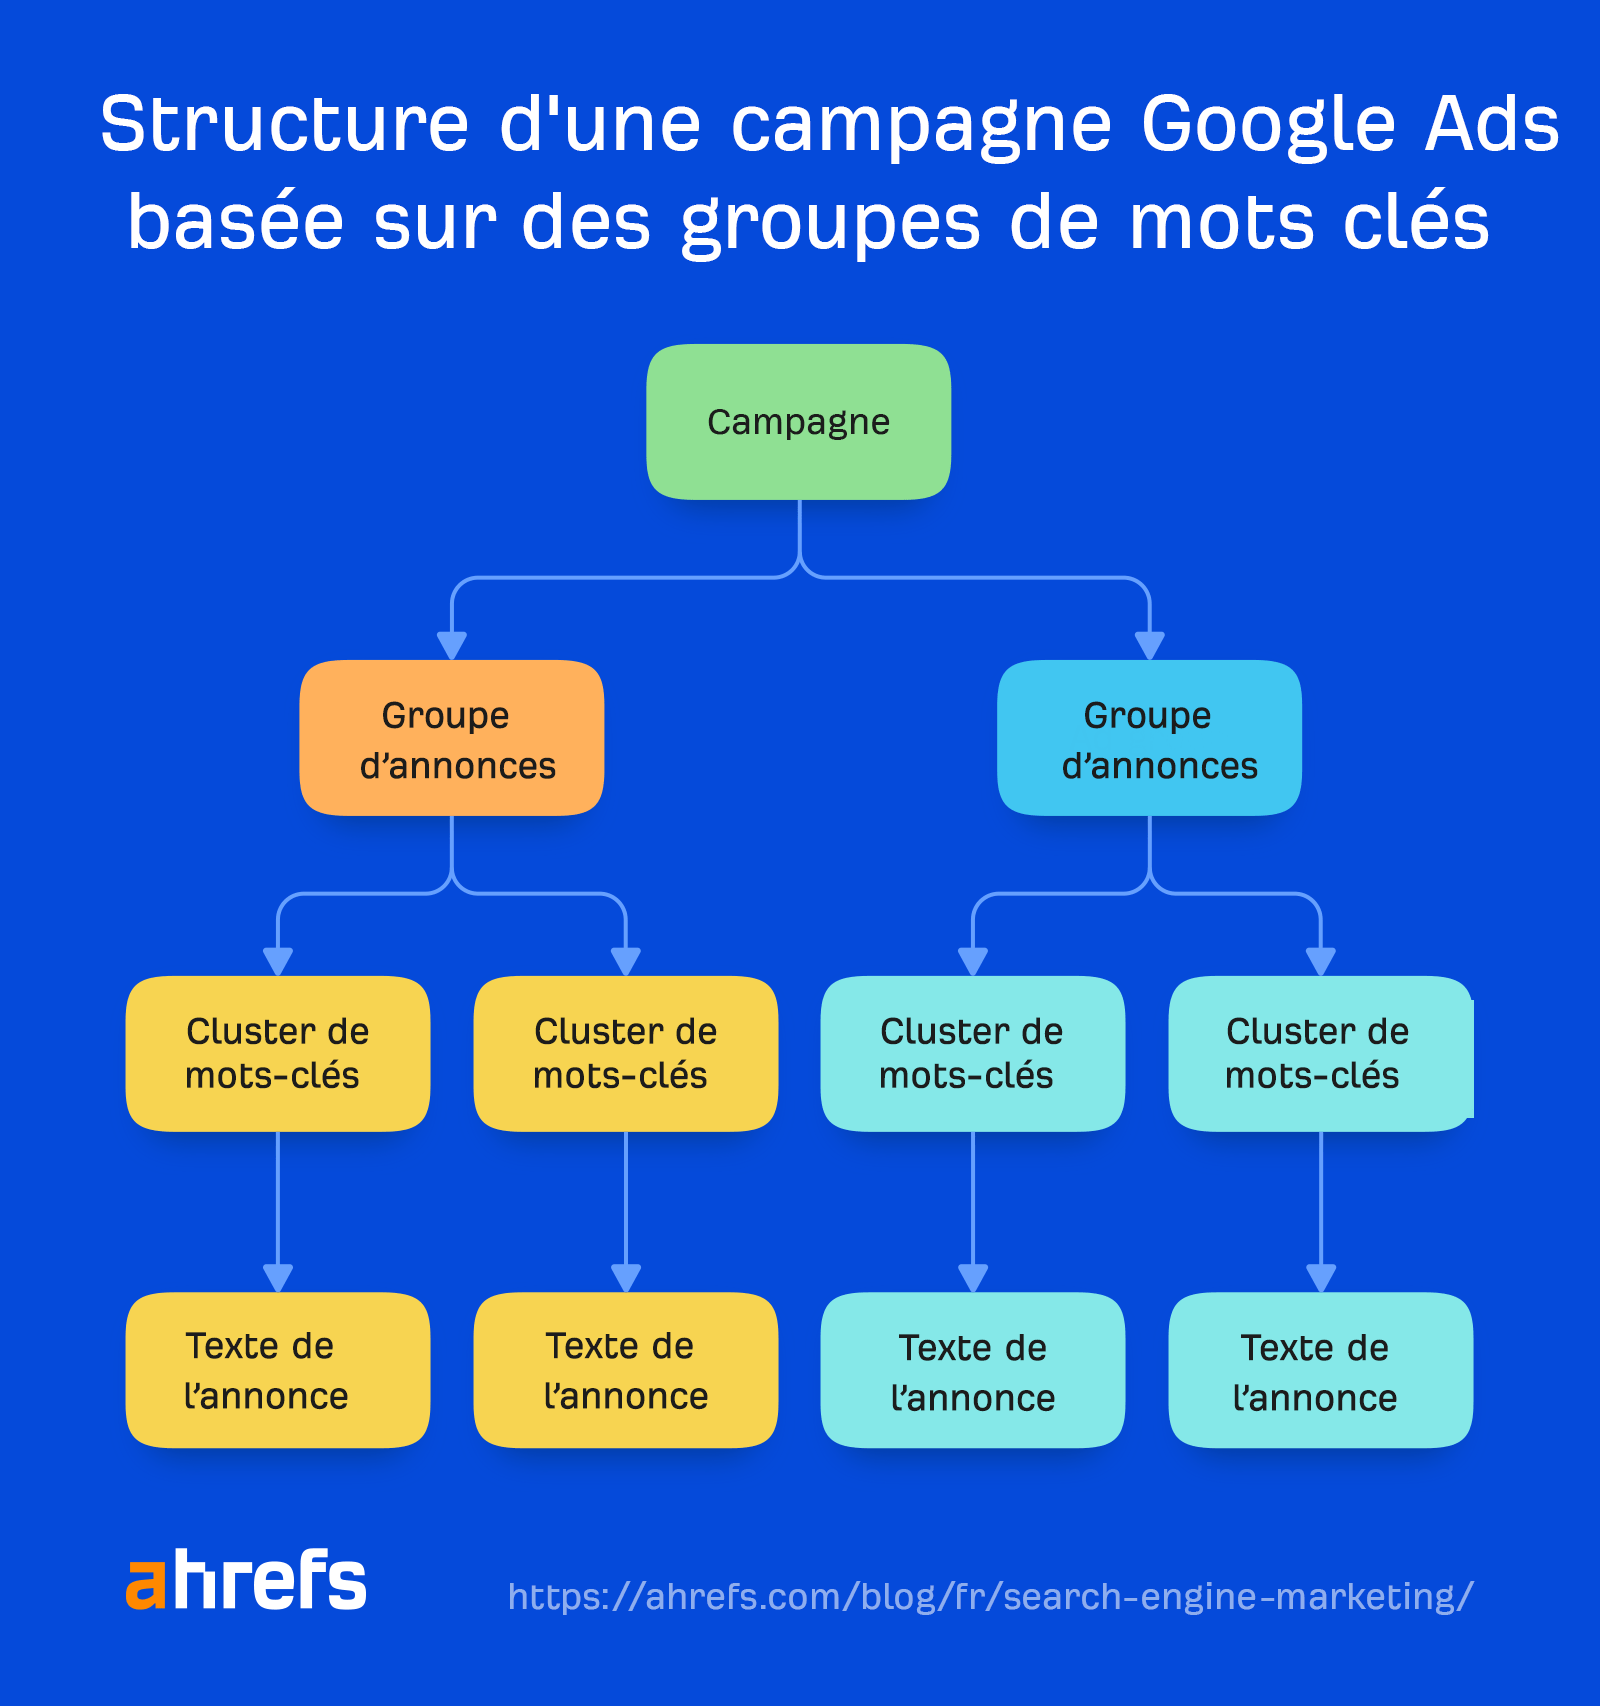 Structure de la campagne Google Ads basée sur des groupes de mots clés